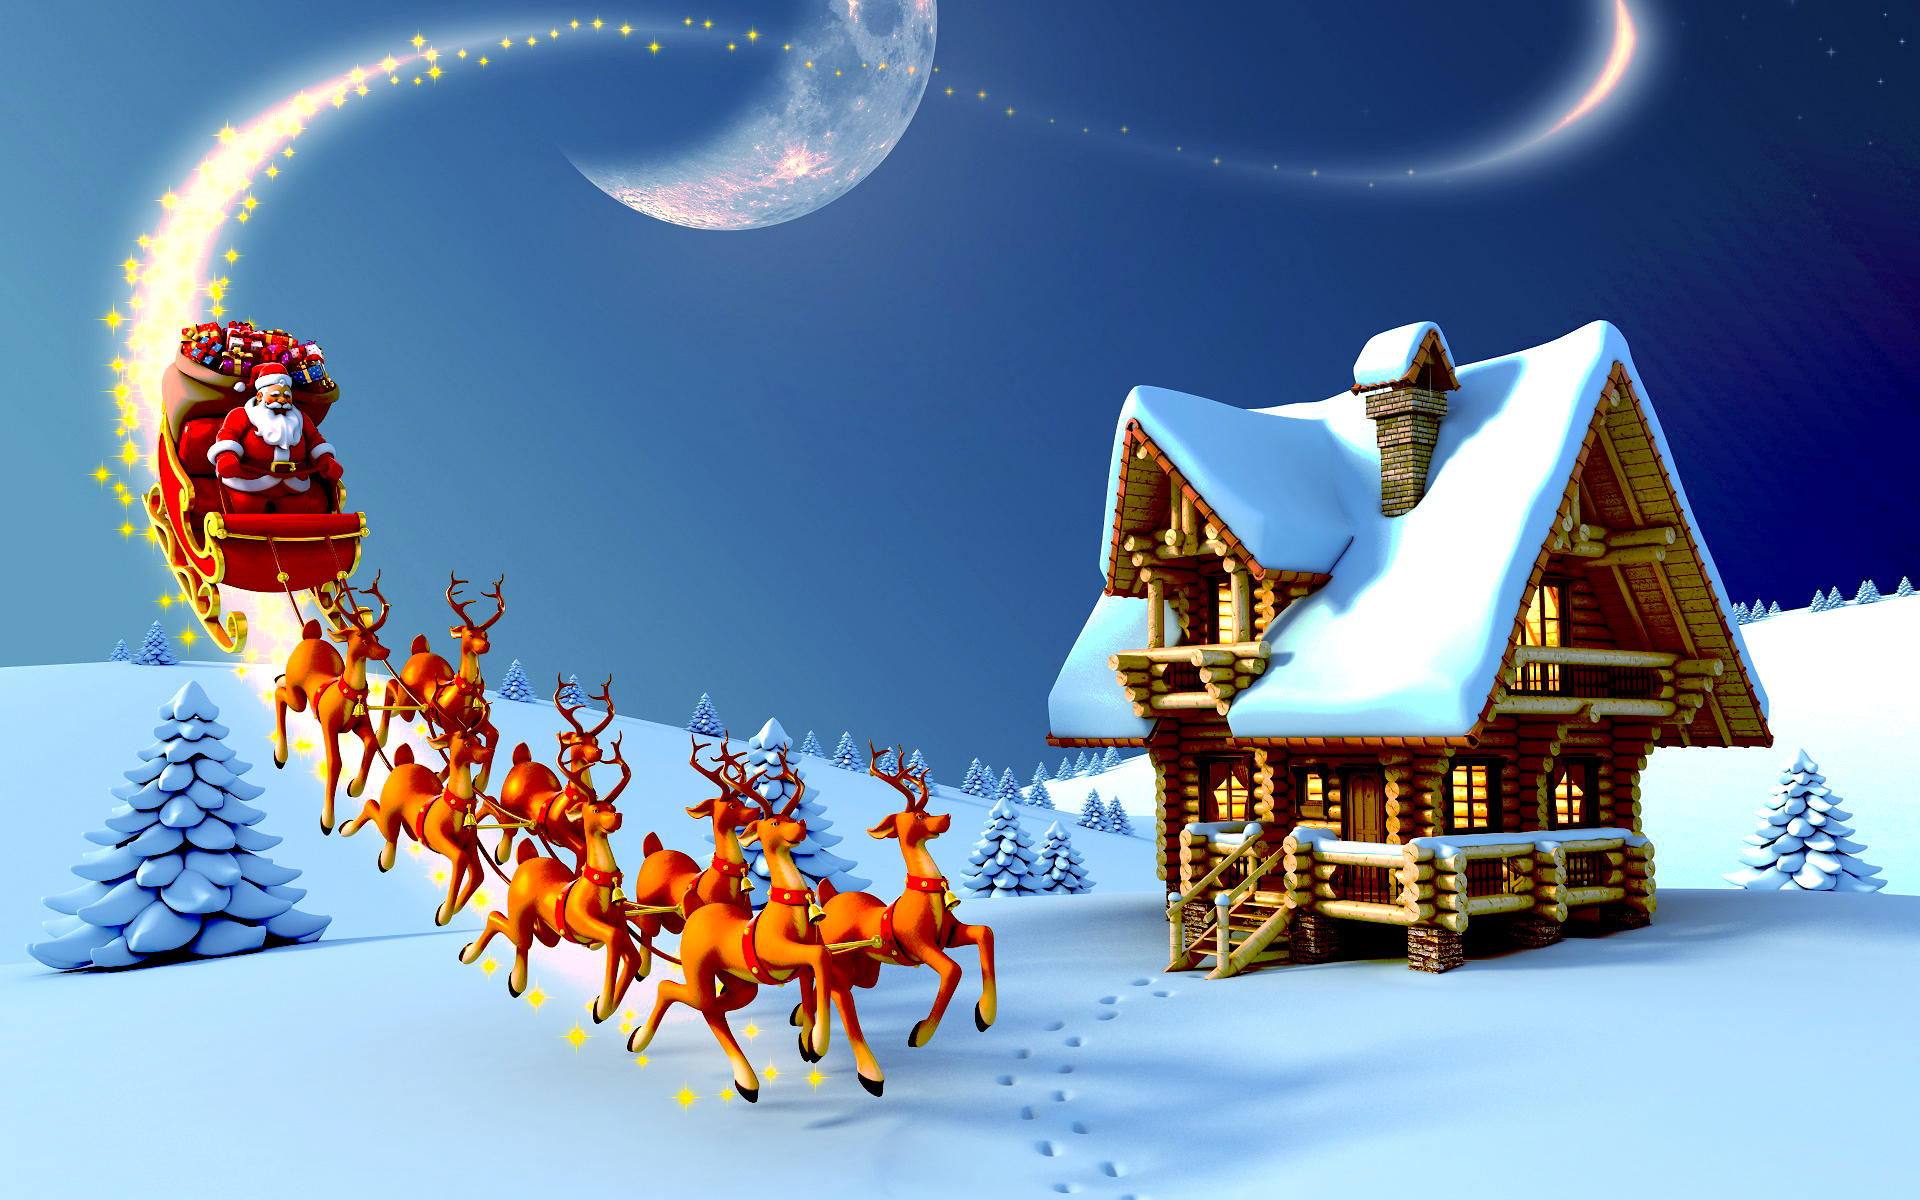 Tranh chủ đề Noel: Tranh là một trong những cách tuyệt vời nhất để thể hiện tình yêu và đam mê với Giáng Sinh. Hãy đến với chúng tôi để khám phá bộ sưu tập tranh độc đáo về chủ đề Noel, từ các bức tranh trừu tượng đến những bức tranh minh hoạ đầy sức sống.